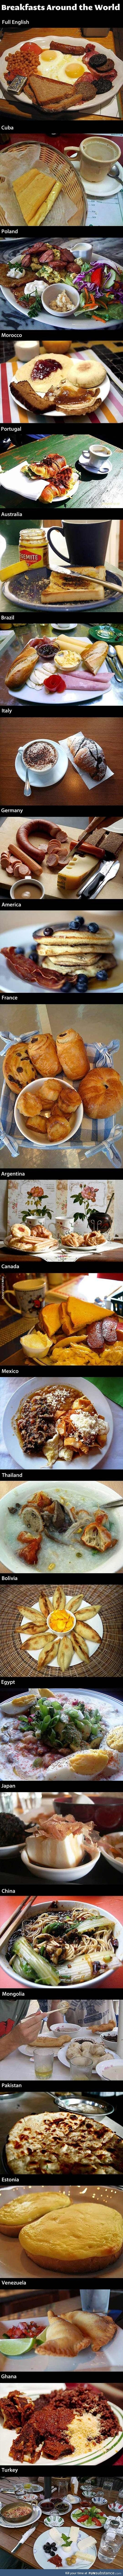 Different breakfasts around the world